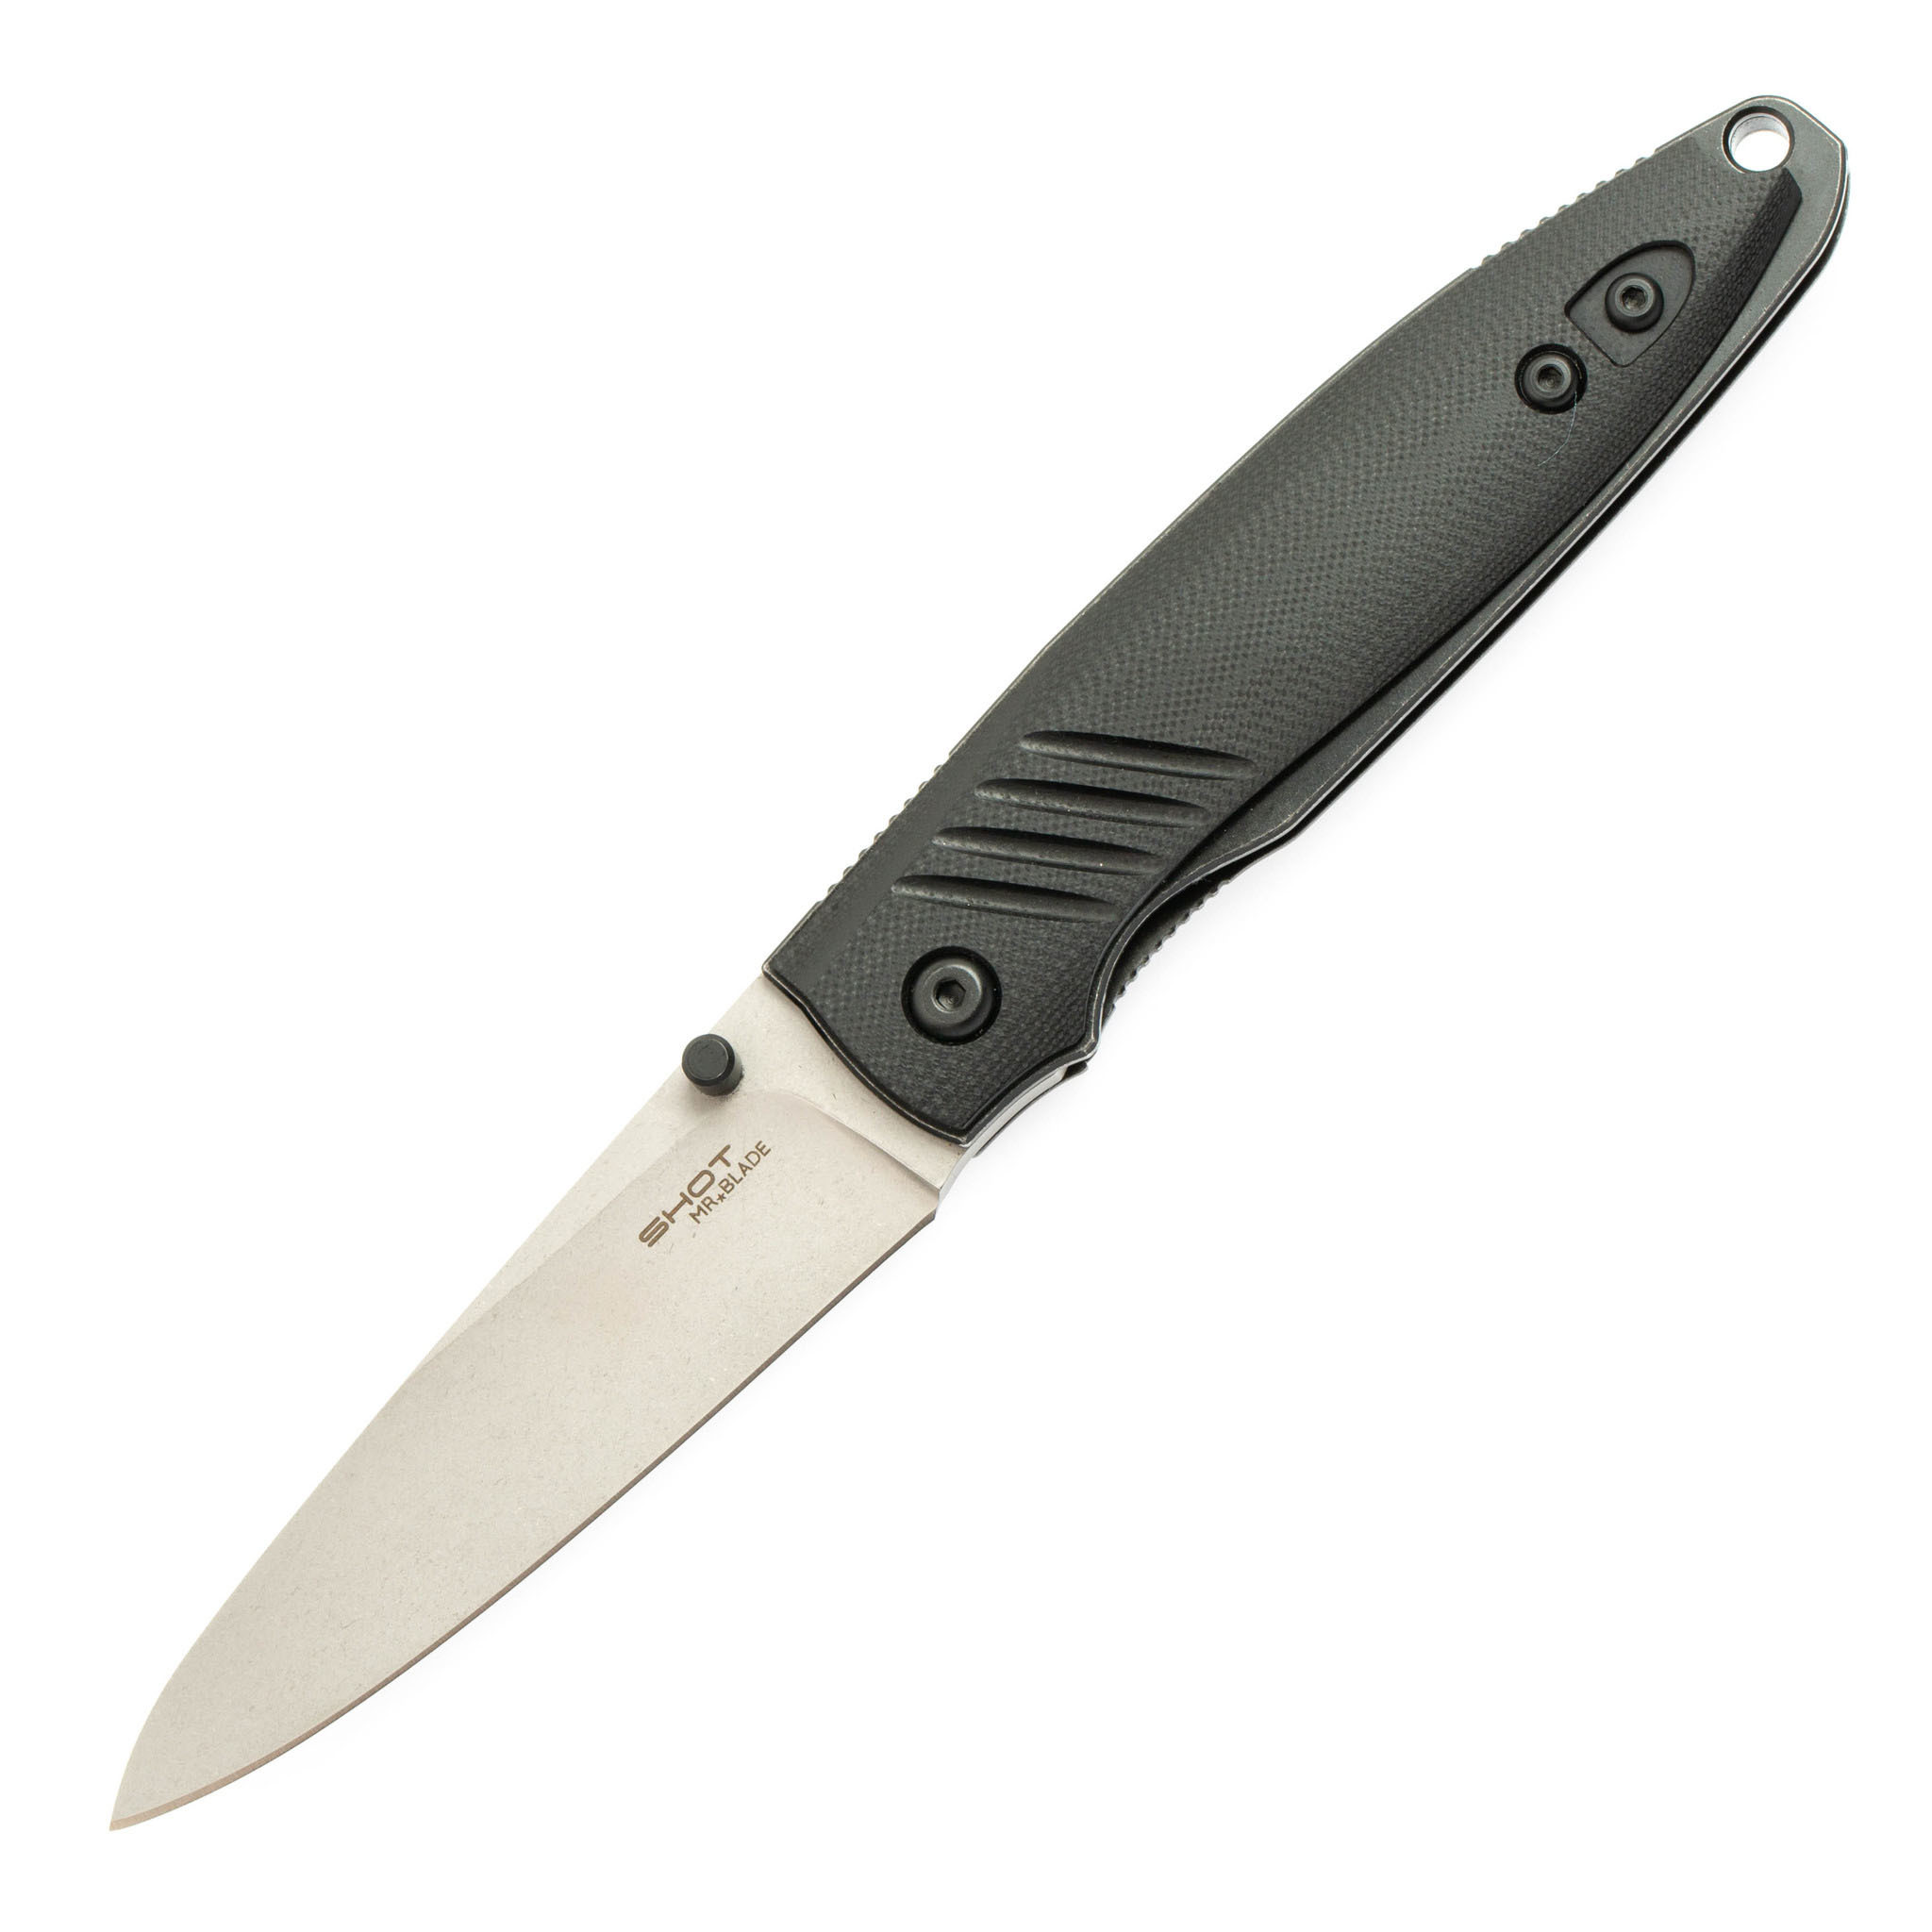 Складной нож Shot Stonewash, Mr.Blade полуавтоматический складной нож ontario rat 1a assisted   blade desert tan g 10 handle